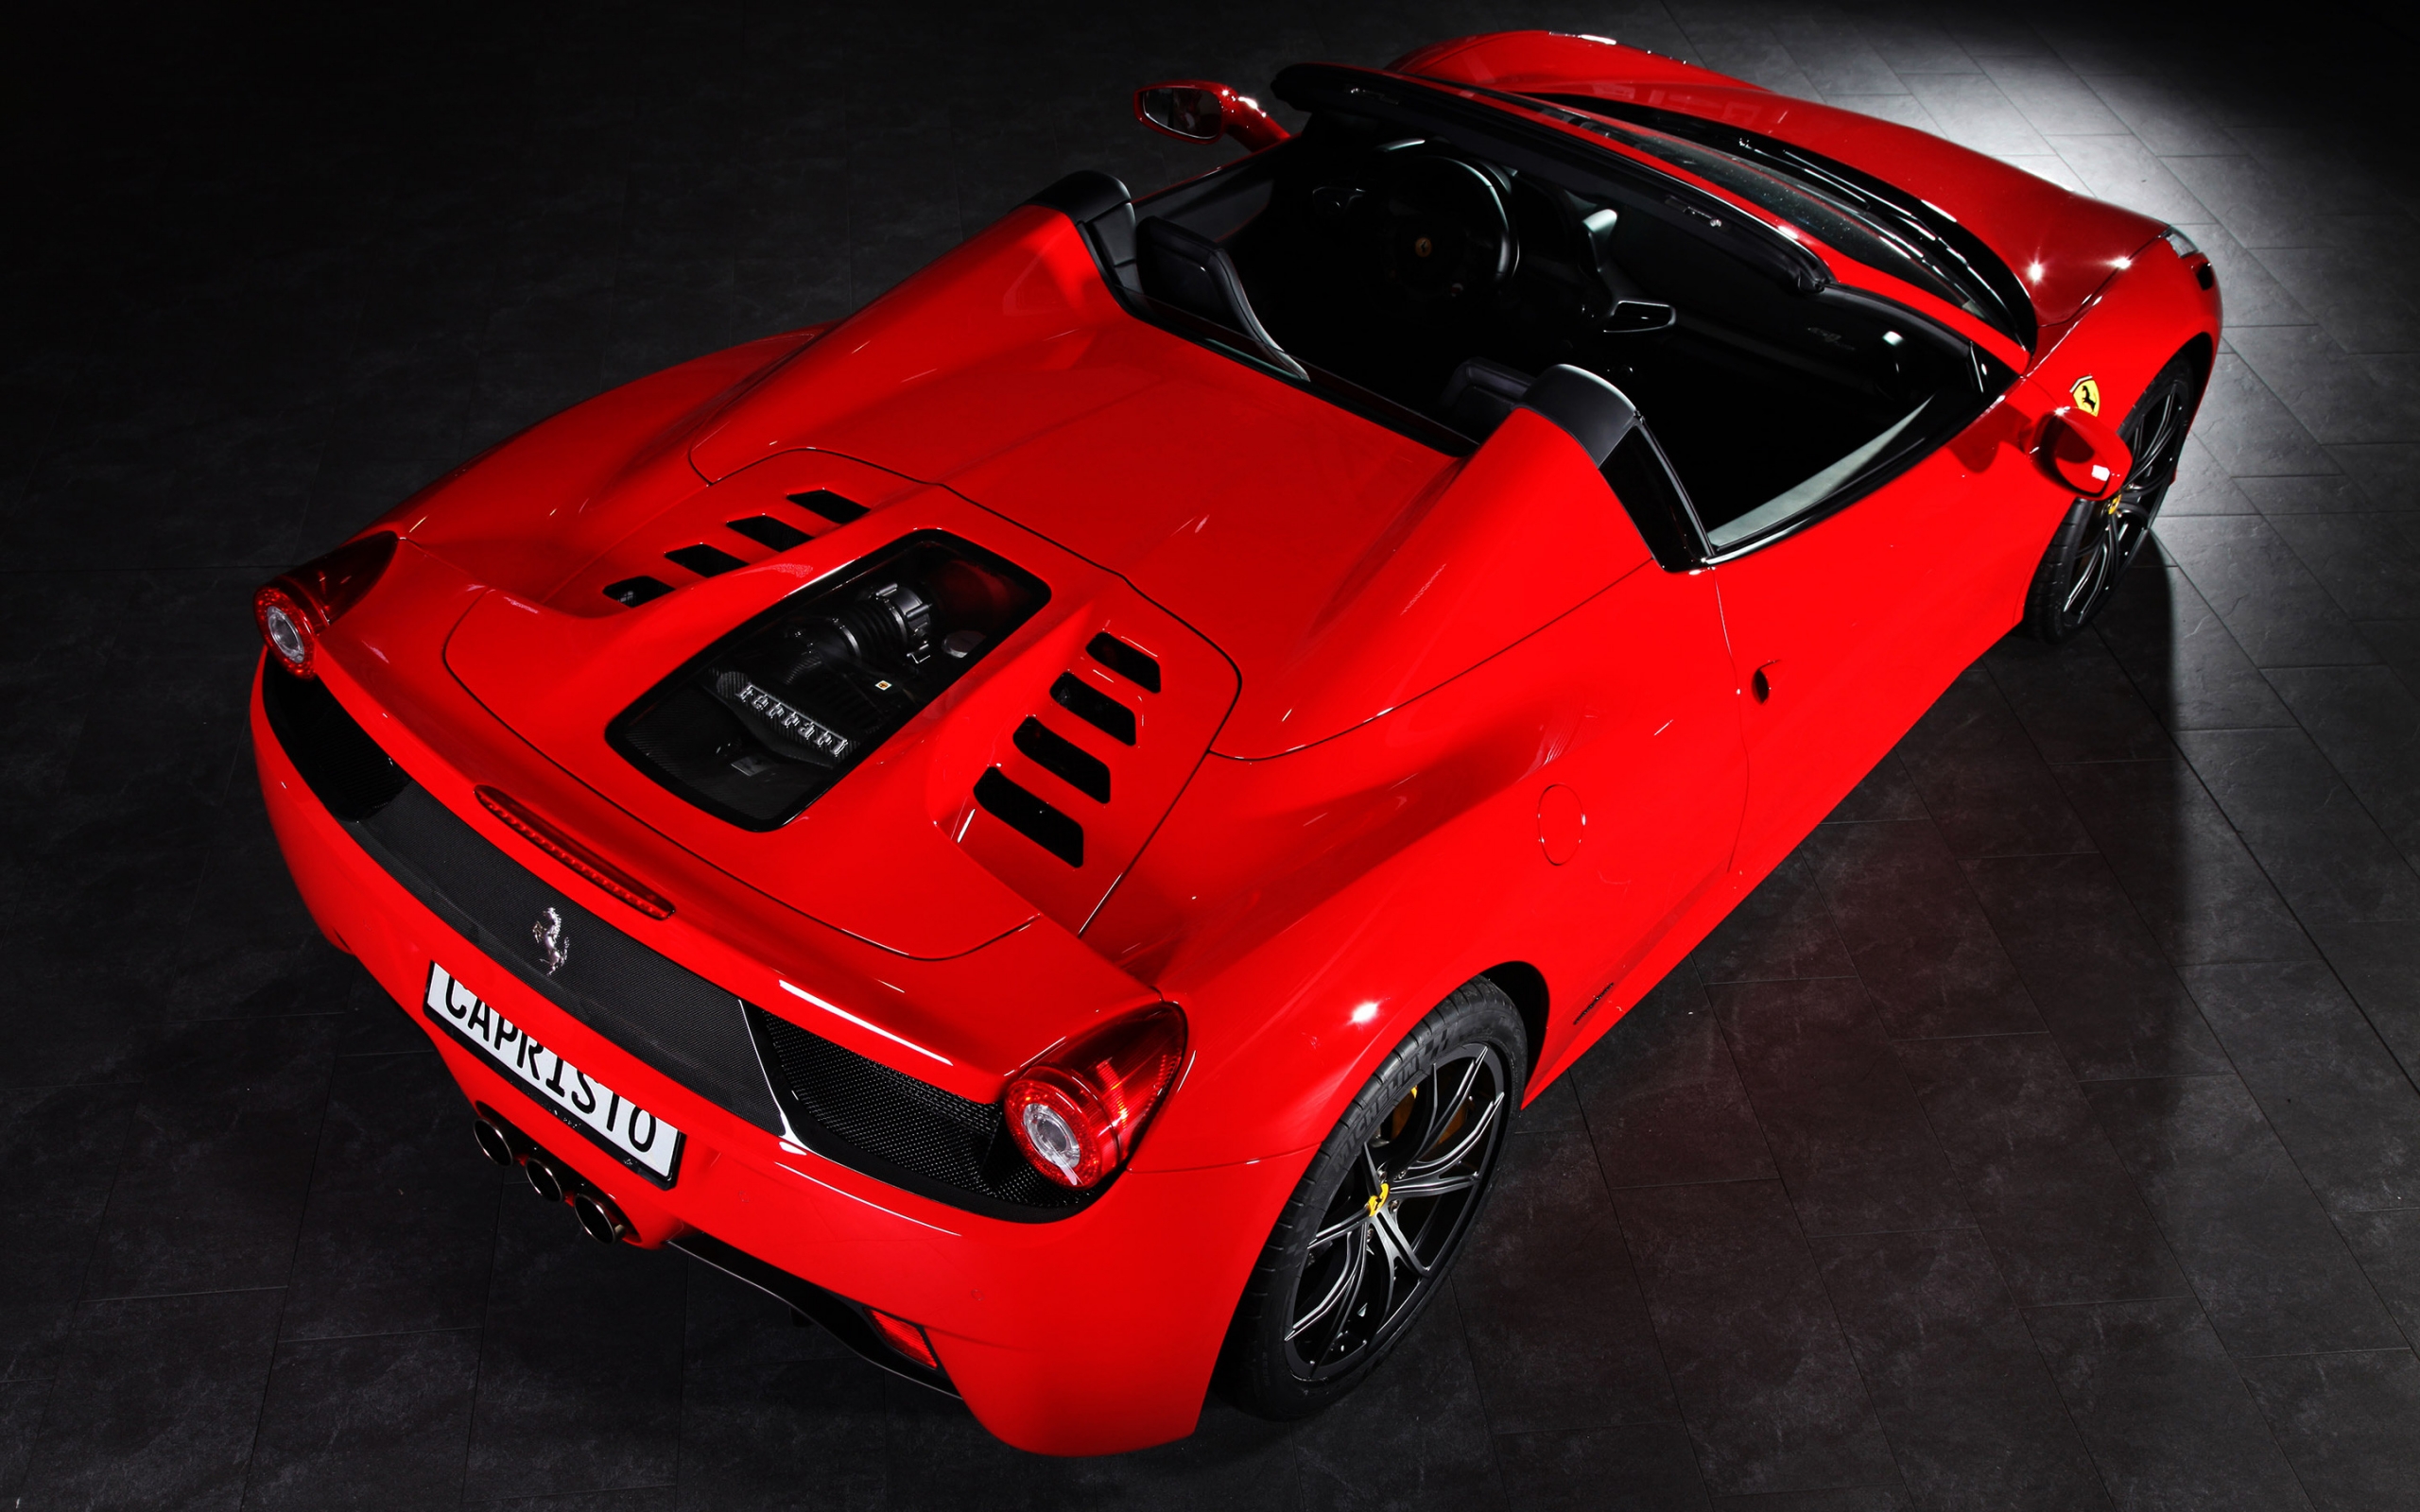 Capristo Ferrari 458 Spider for 2560 x 1600 widescreen resolution